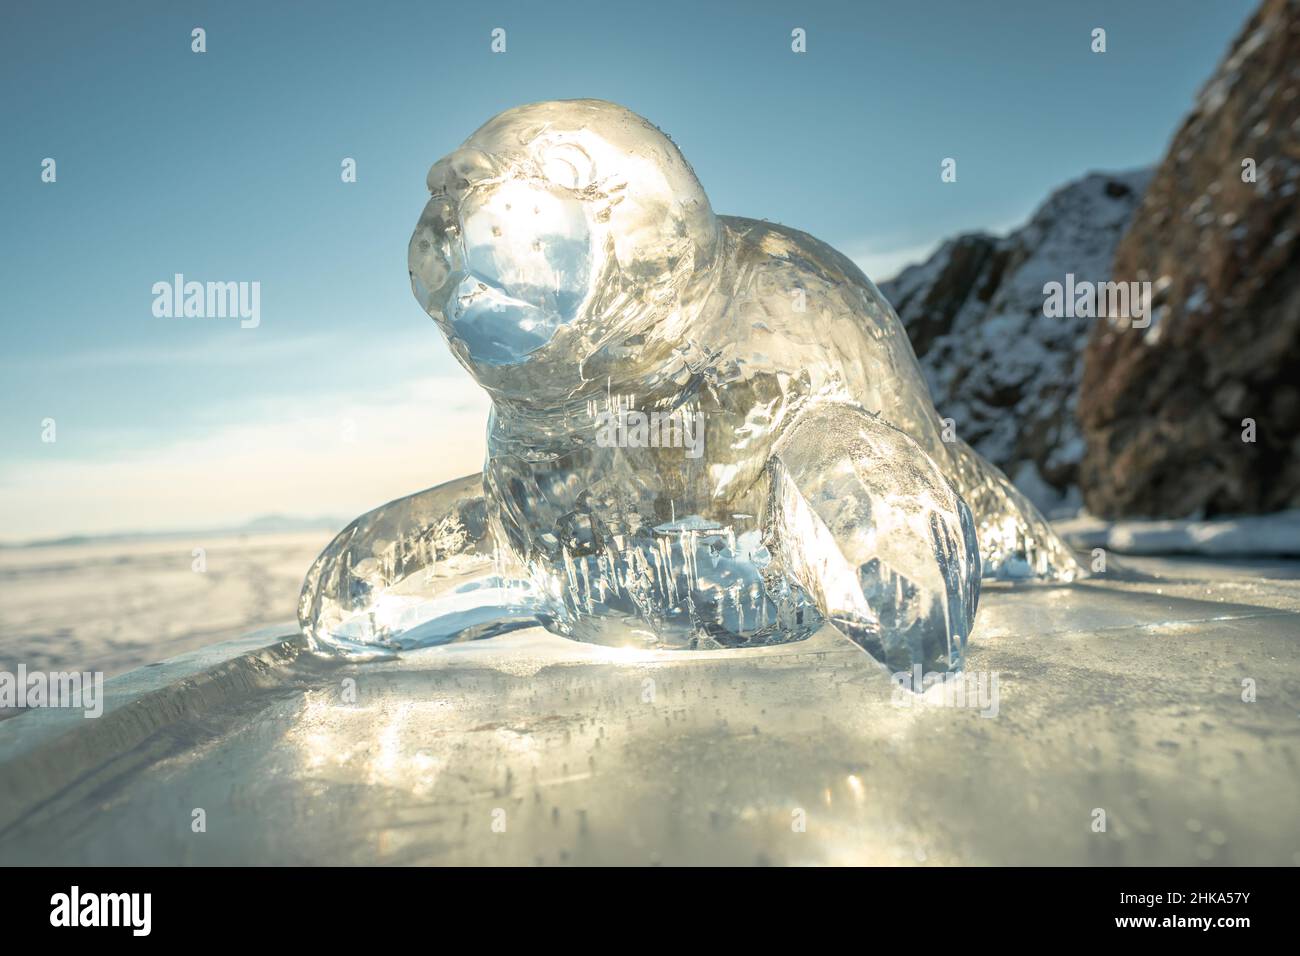 Sculpture transparente sur glace d'un sceau dans les rayons du soleil.L'art d'hiver est l'art de la nature sur le lac Baikal. Banque D'Images